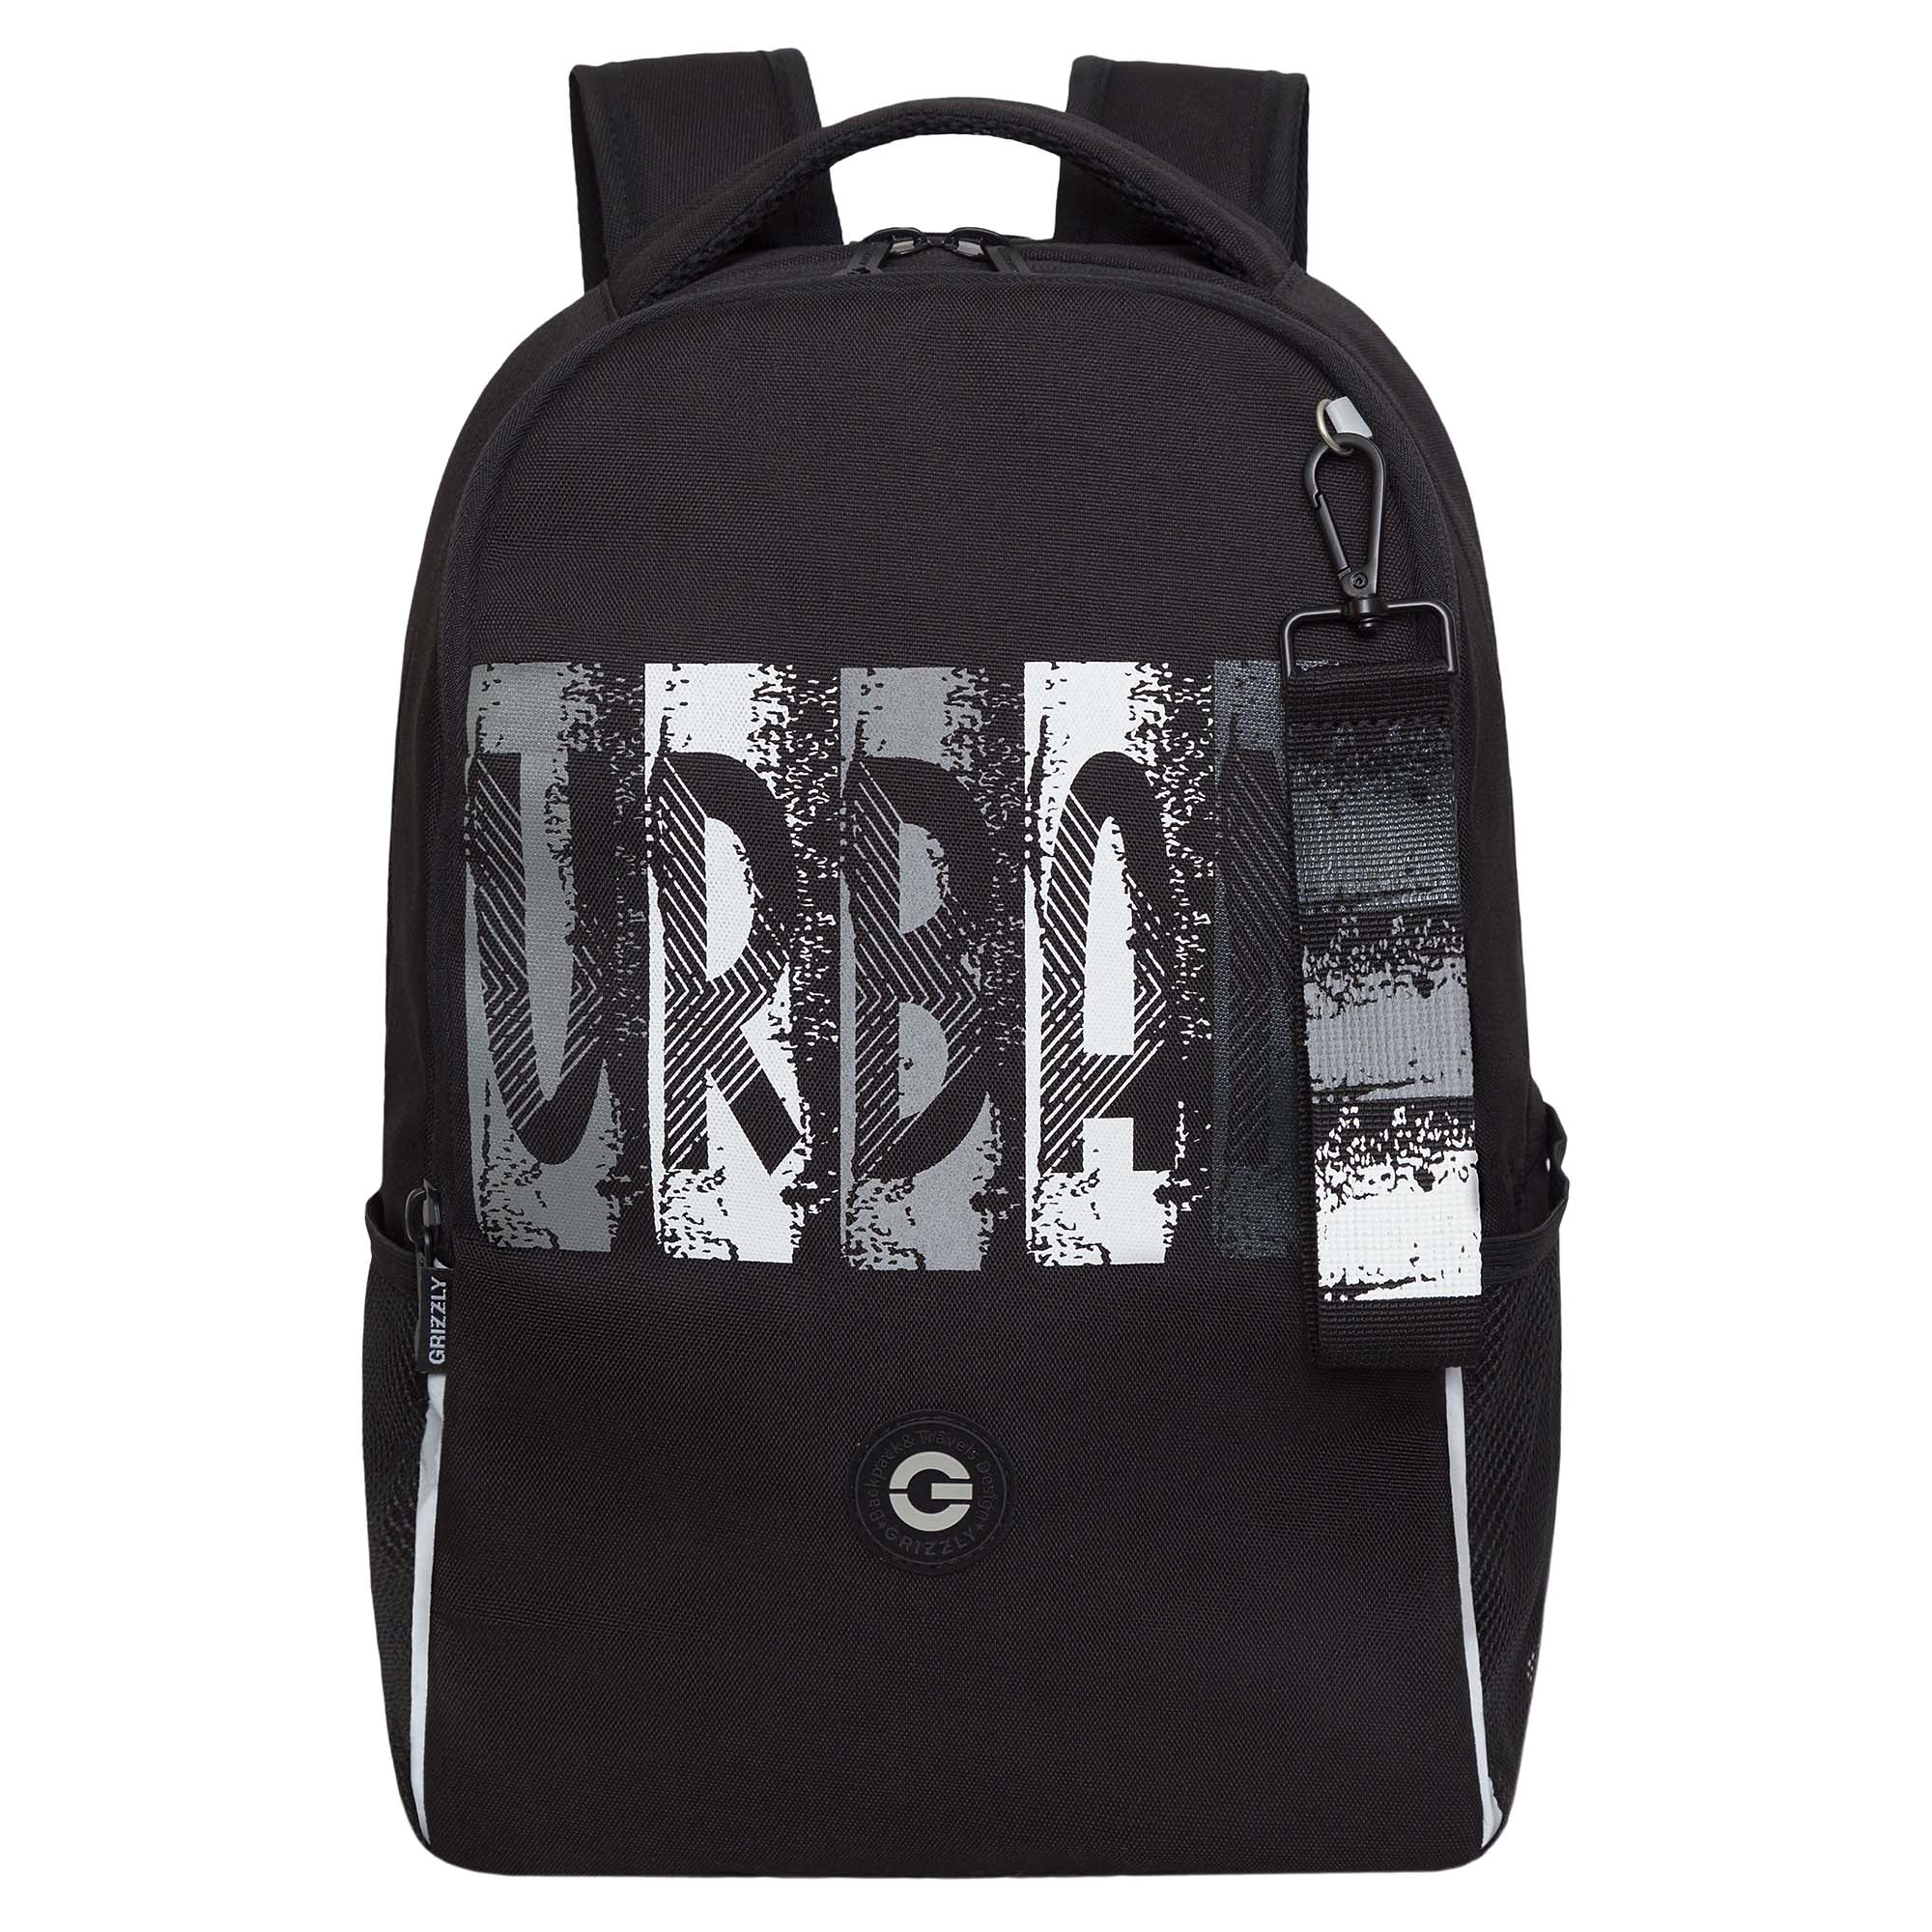 Рюкзак школьный GRIZZLY легкий с жесткой спинкой, 2 отделения, черный; серый, RB-451-3/2 рюкзак школьный grizzly rg 364 2с анатомический тремя отделениями серый